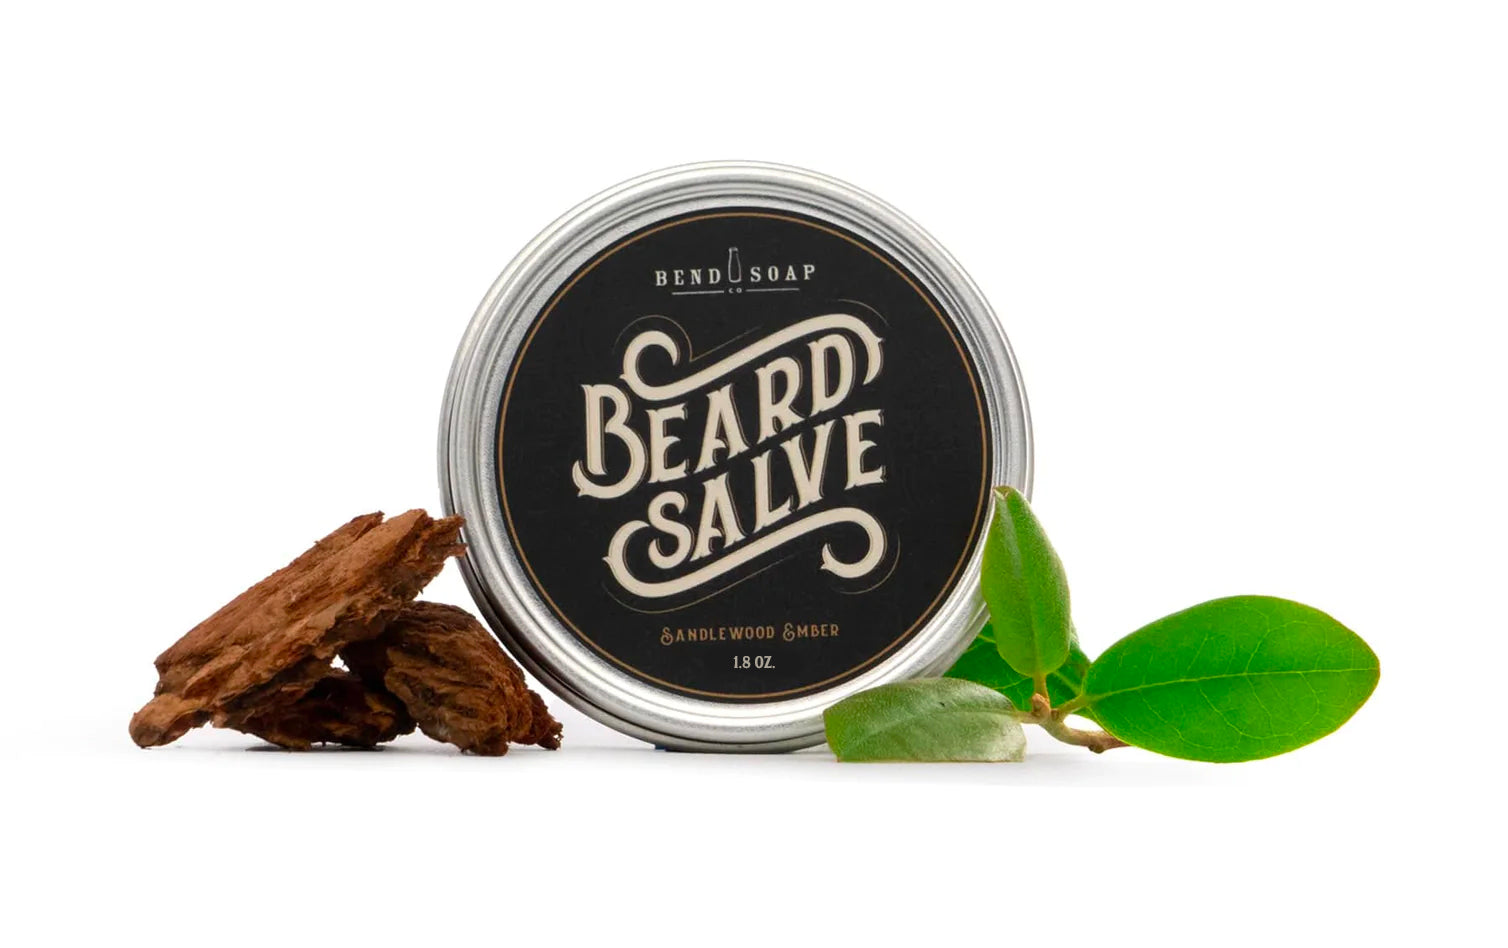 A tin of All-Natural Beard Salve